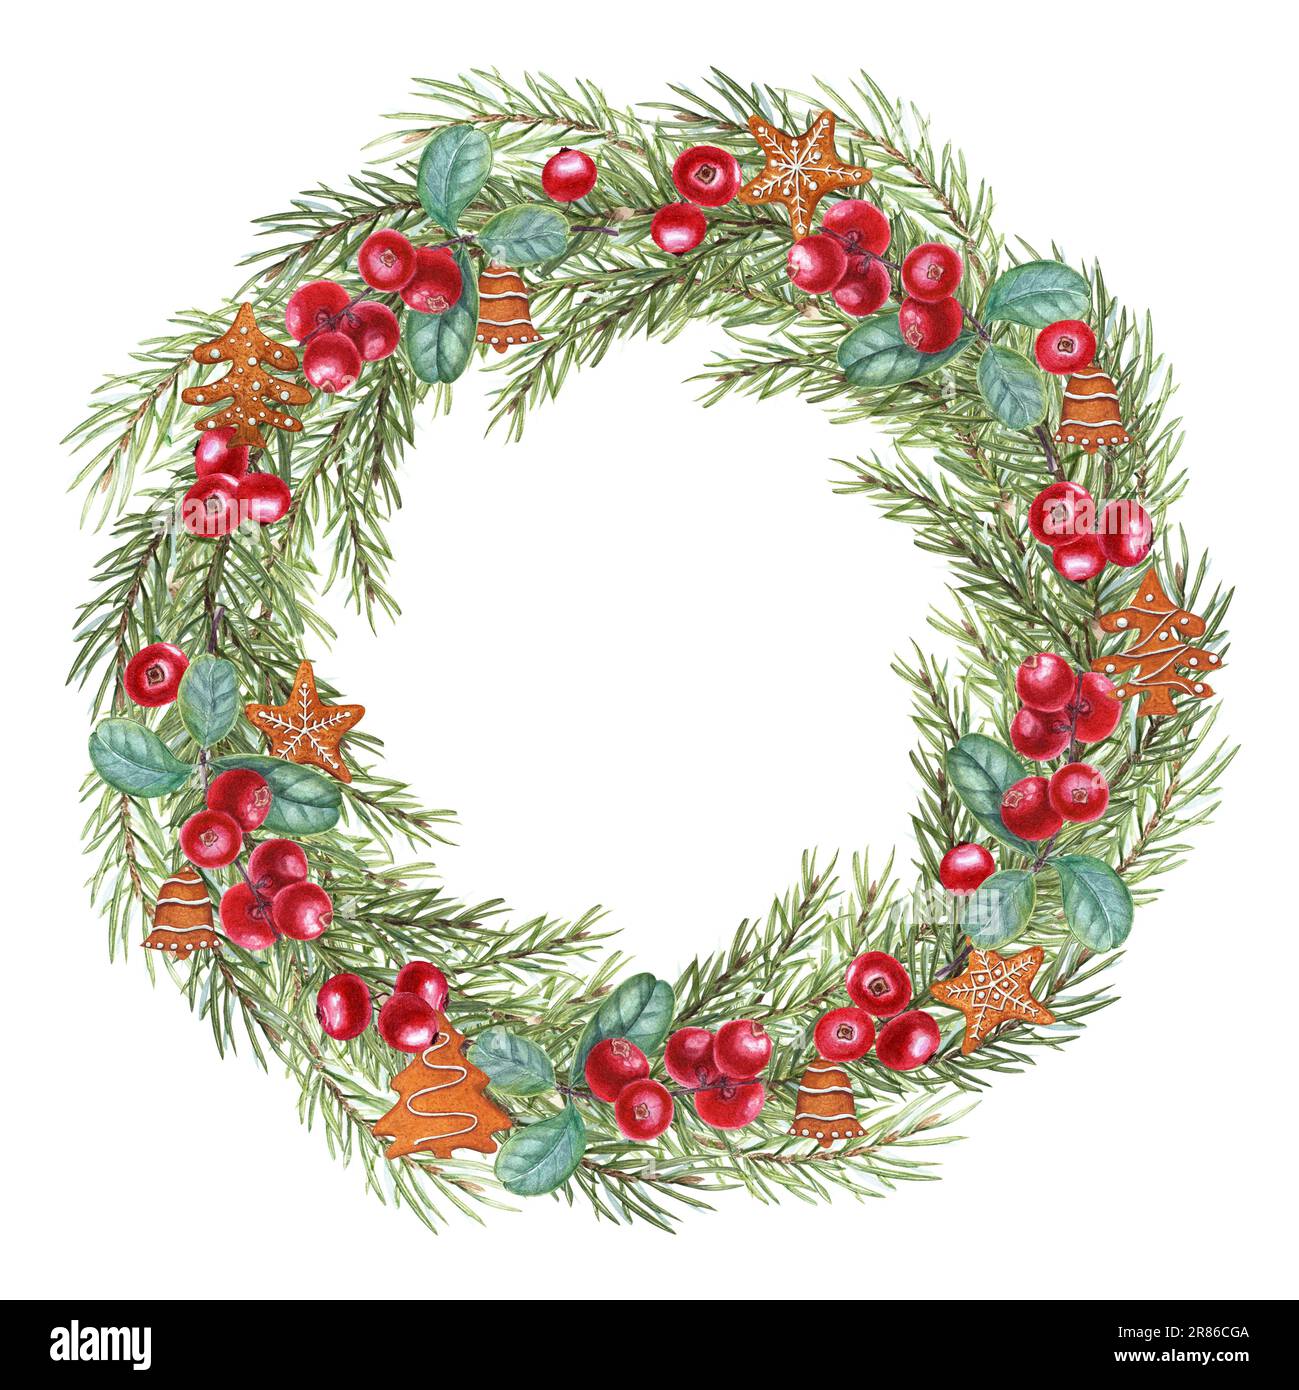 Weihnachtskranz aus Fichtenholz, Sternanis, Lebkekse, Cowberry isoliert auf weißem Hintergrund. Aquarell-Illustration für Grüße, Weihnachten Stockfoto